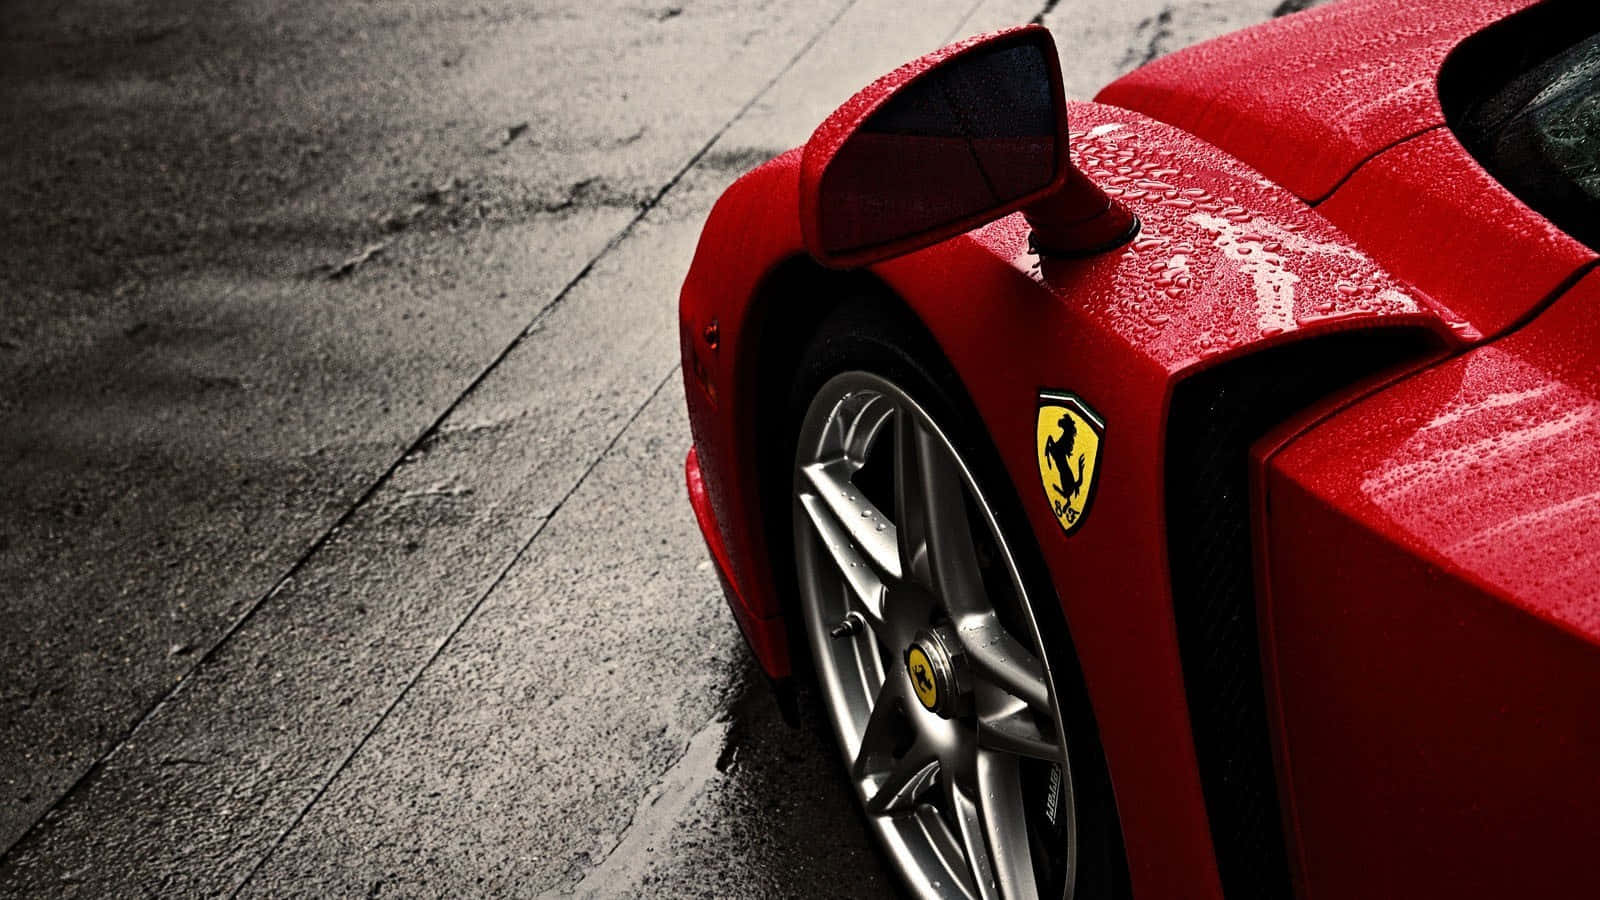 Oplev spændingen ved at køre en klassisk Ferrari. Wallpaper